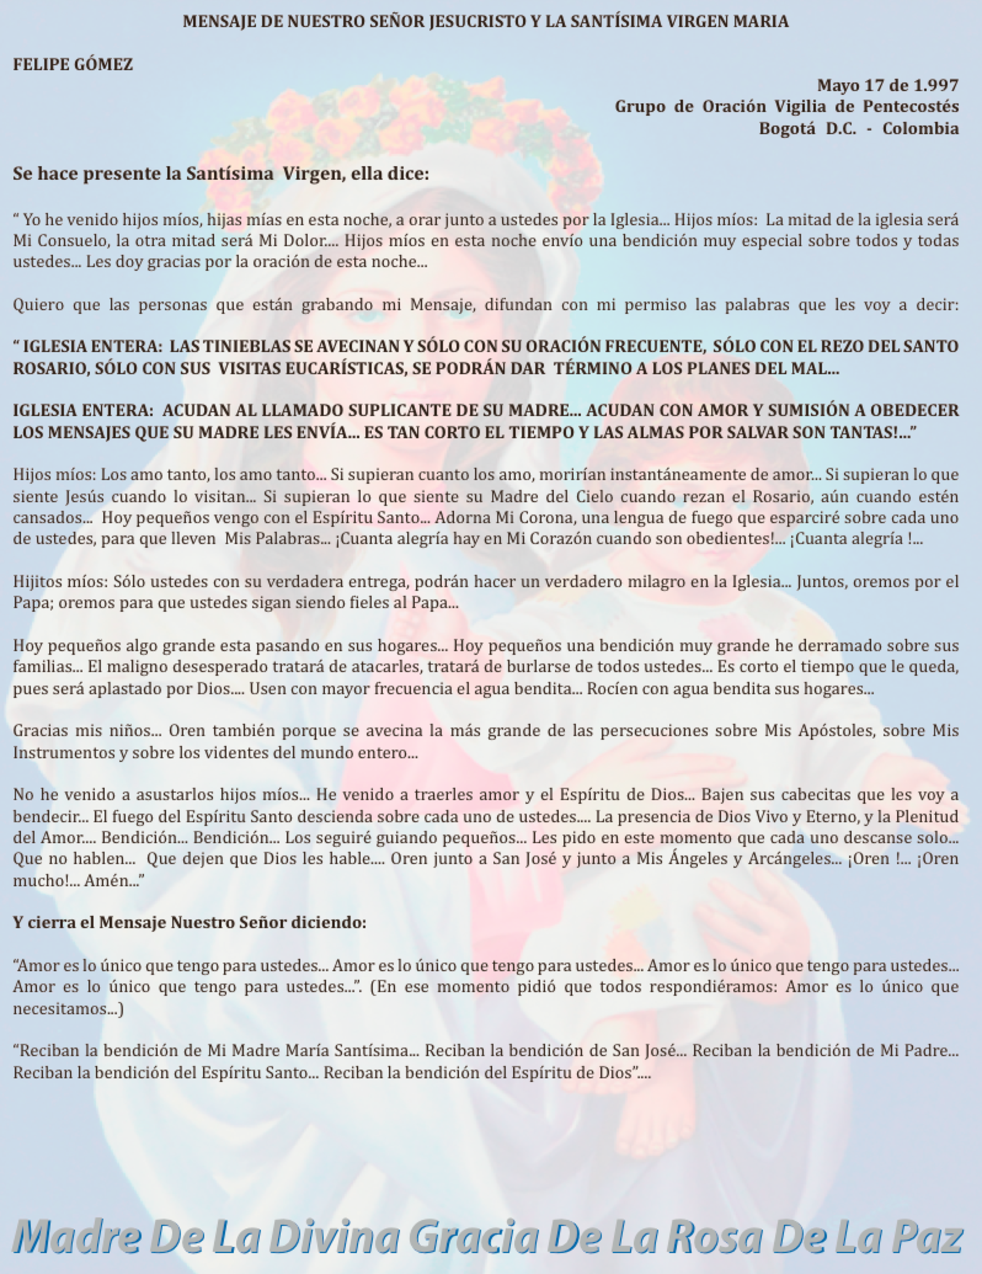 MAYO 17 de 1997 Bogotá Colombia - FG mensaje de la virgen